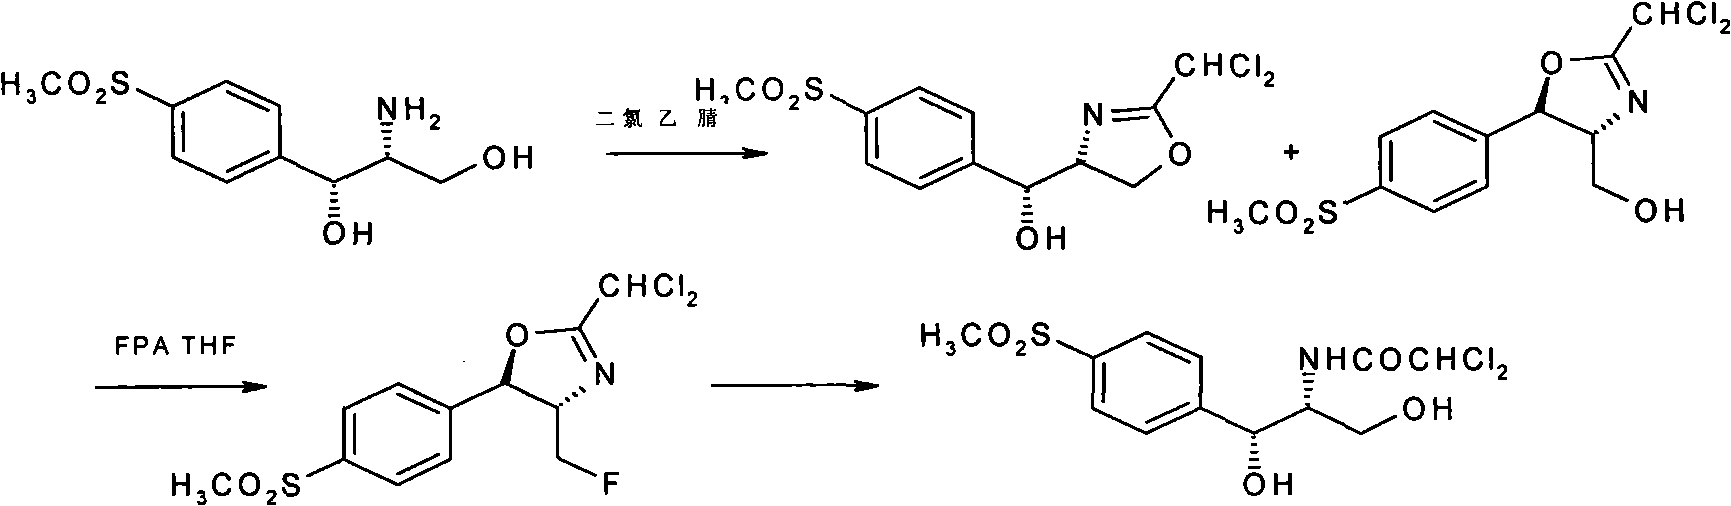 Method for synthesizing florfenicol